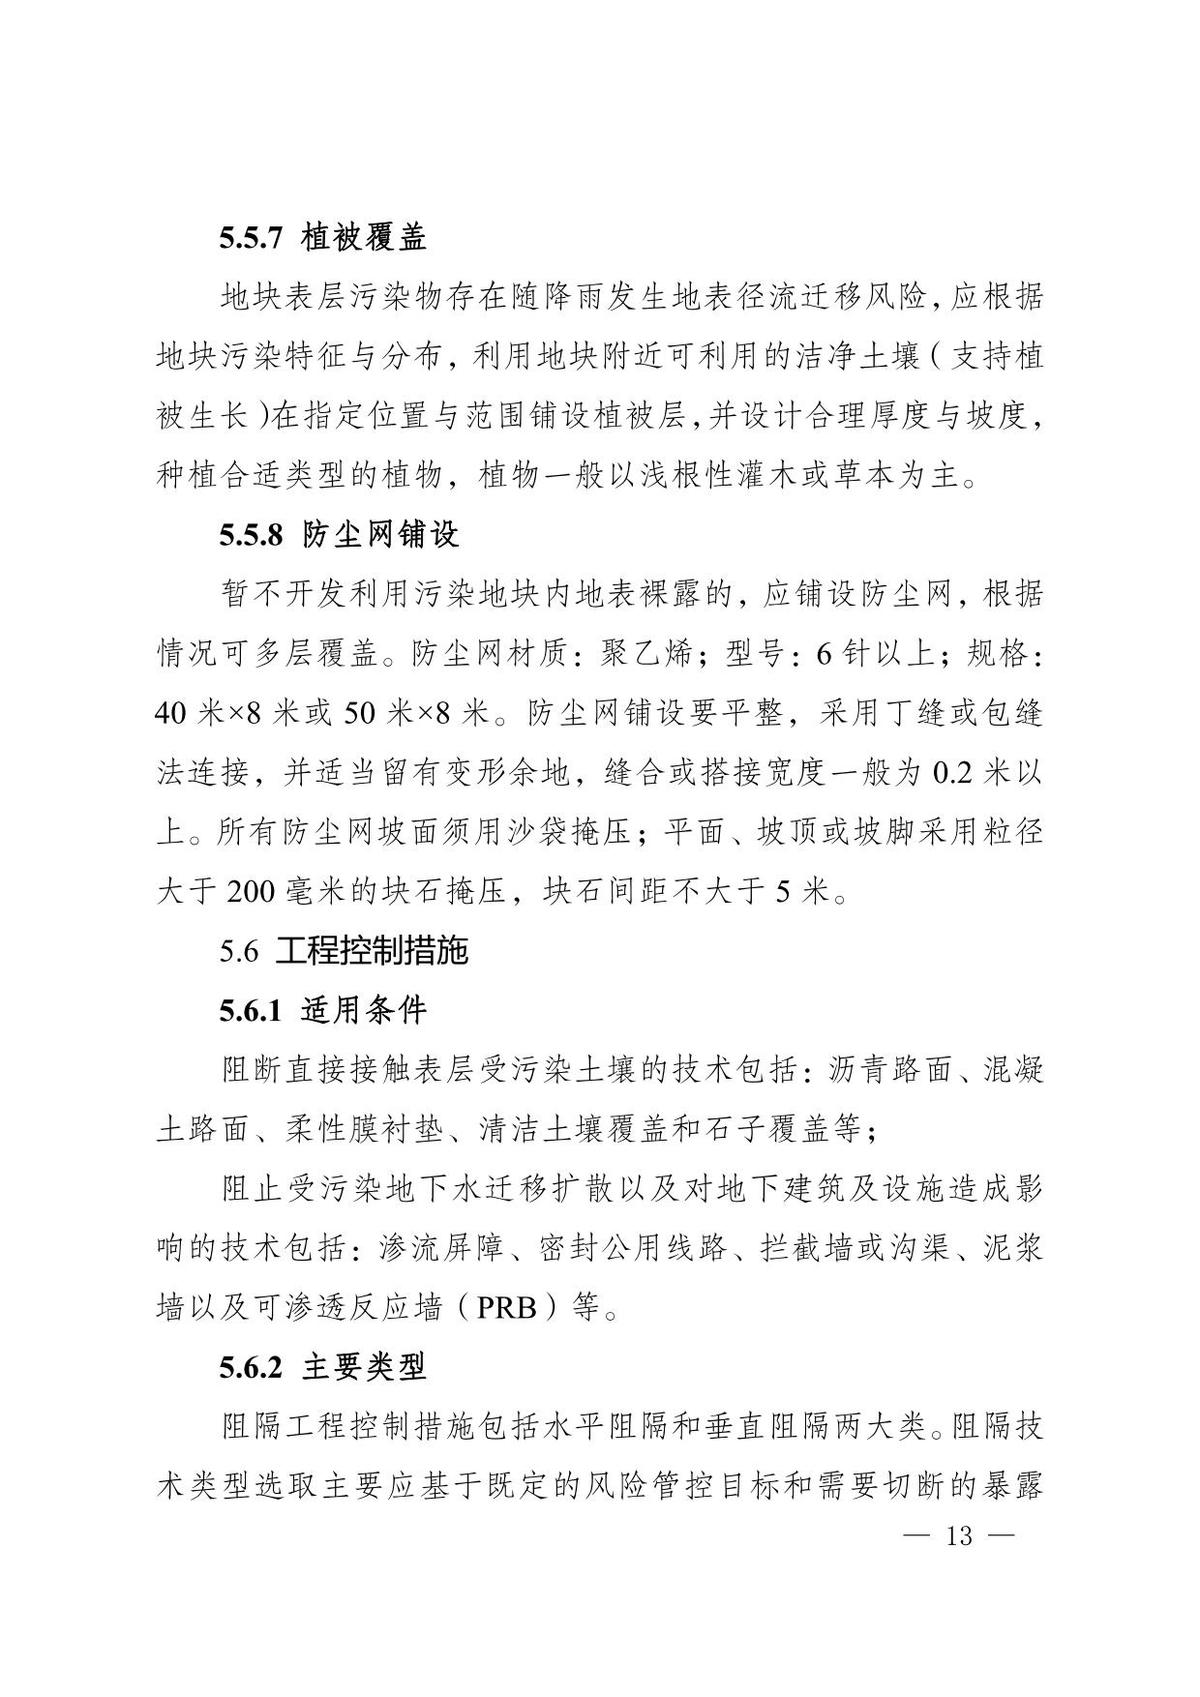 河南省暂不开发利用污染地块风险管控技术指南(试行）